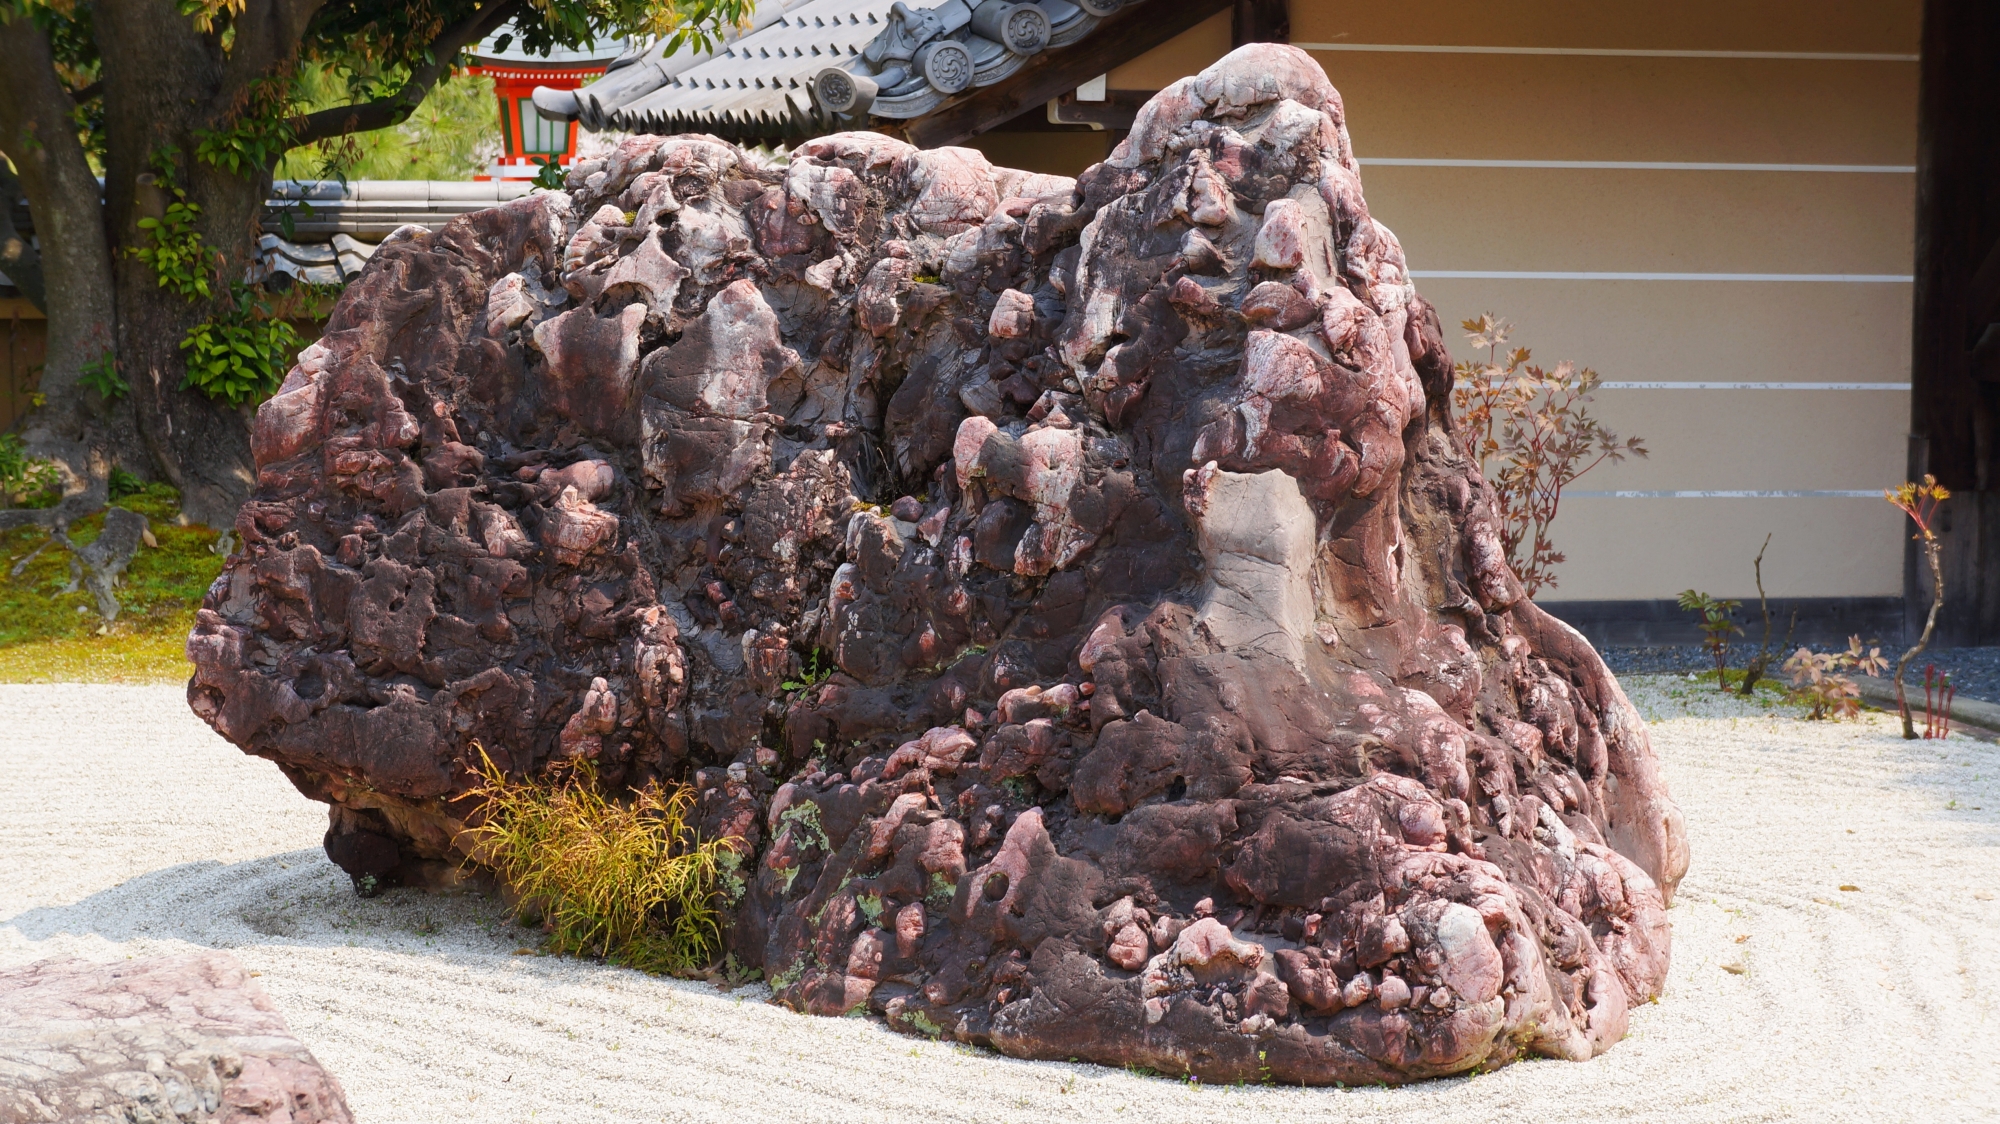 それぞれの岩が動物の形をしているため「動物の石の寺」と呼ばれる正法寺